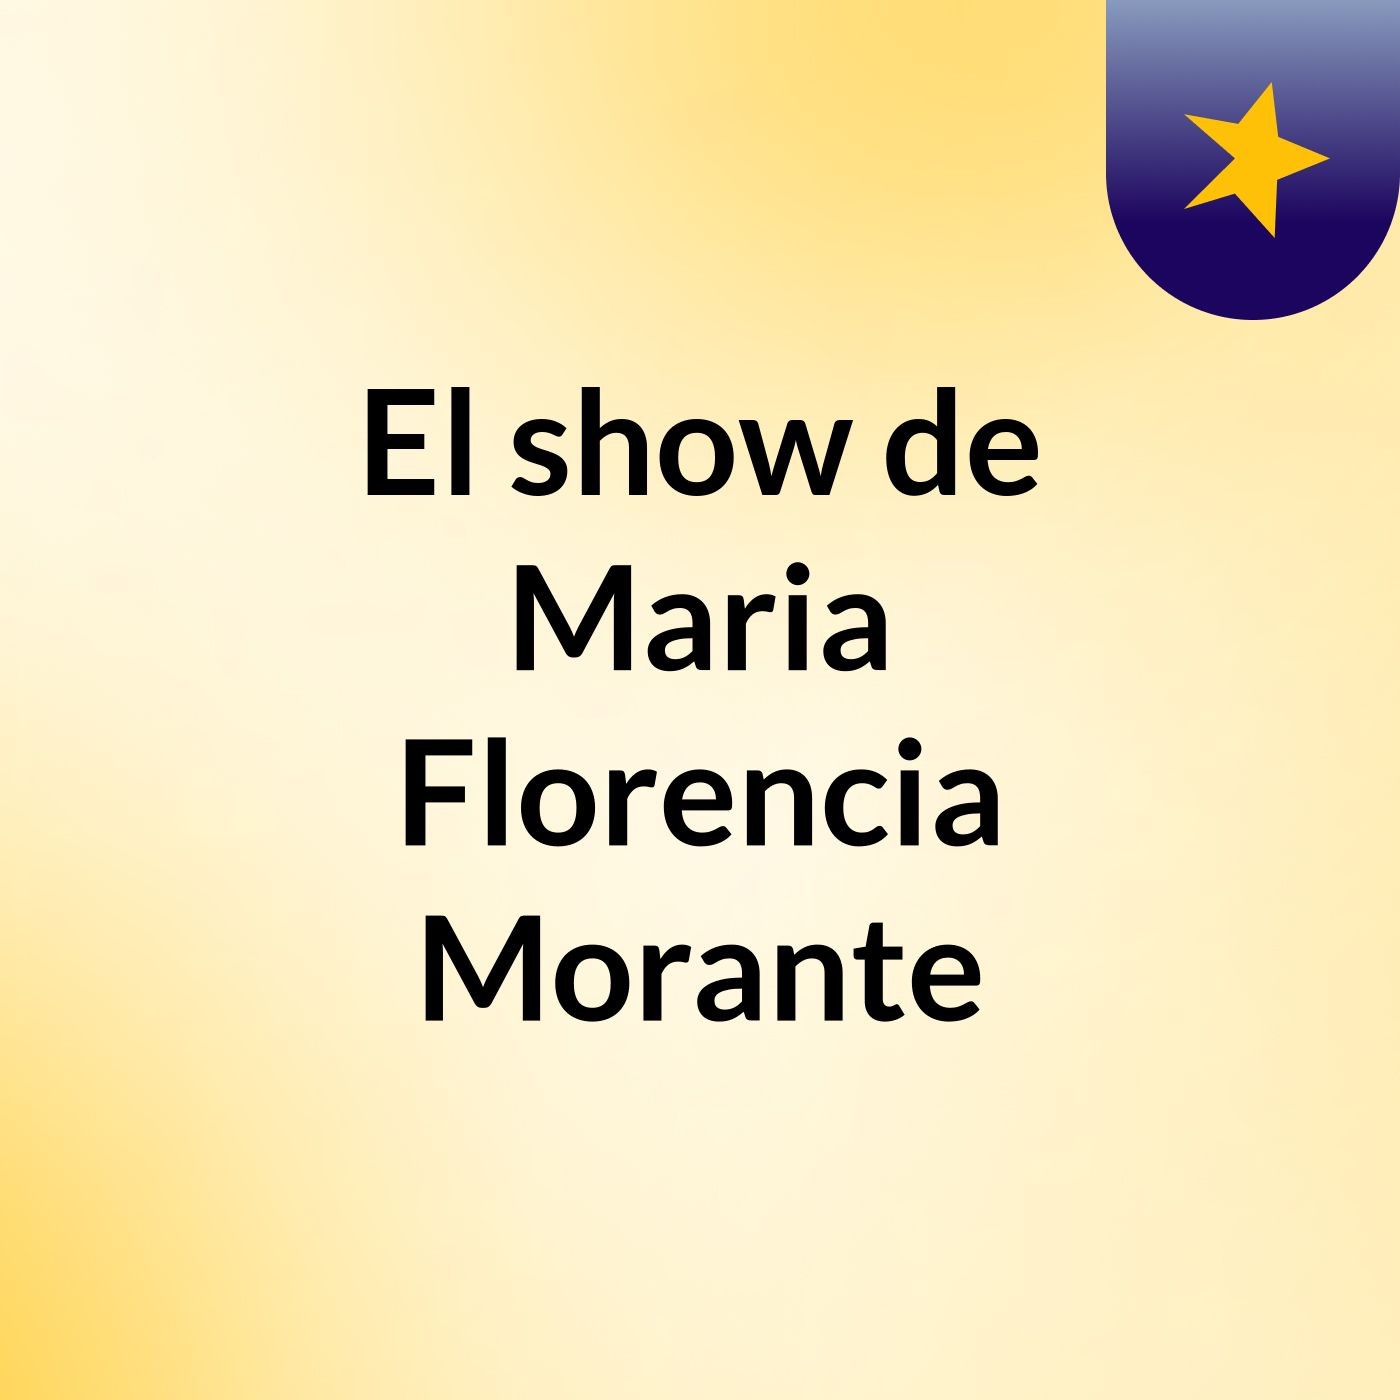 El show de Maria Florencia Morante